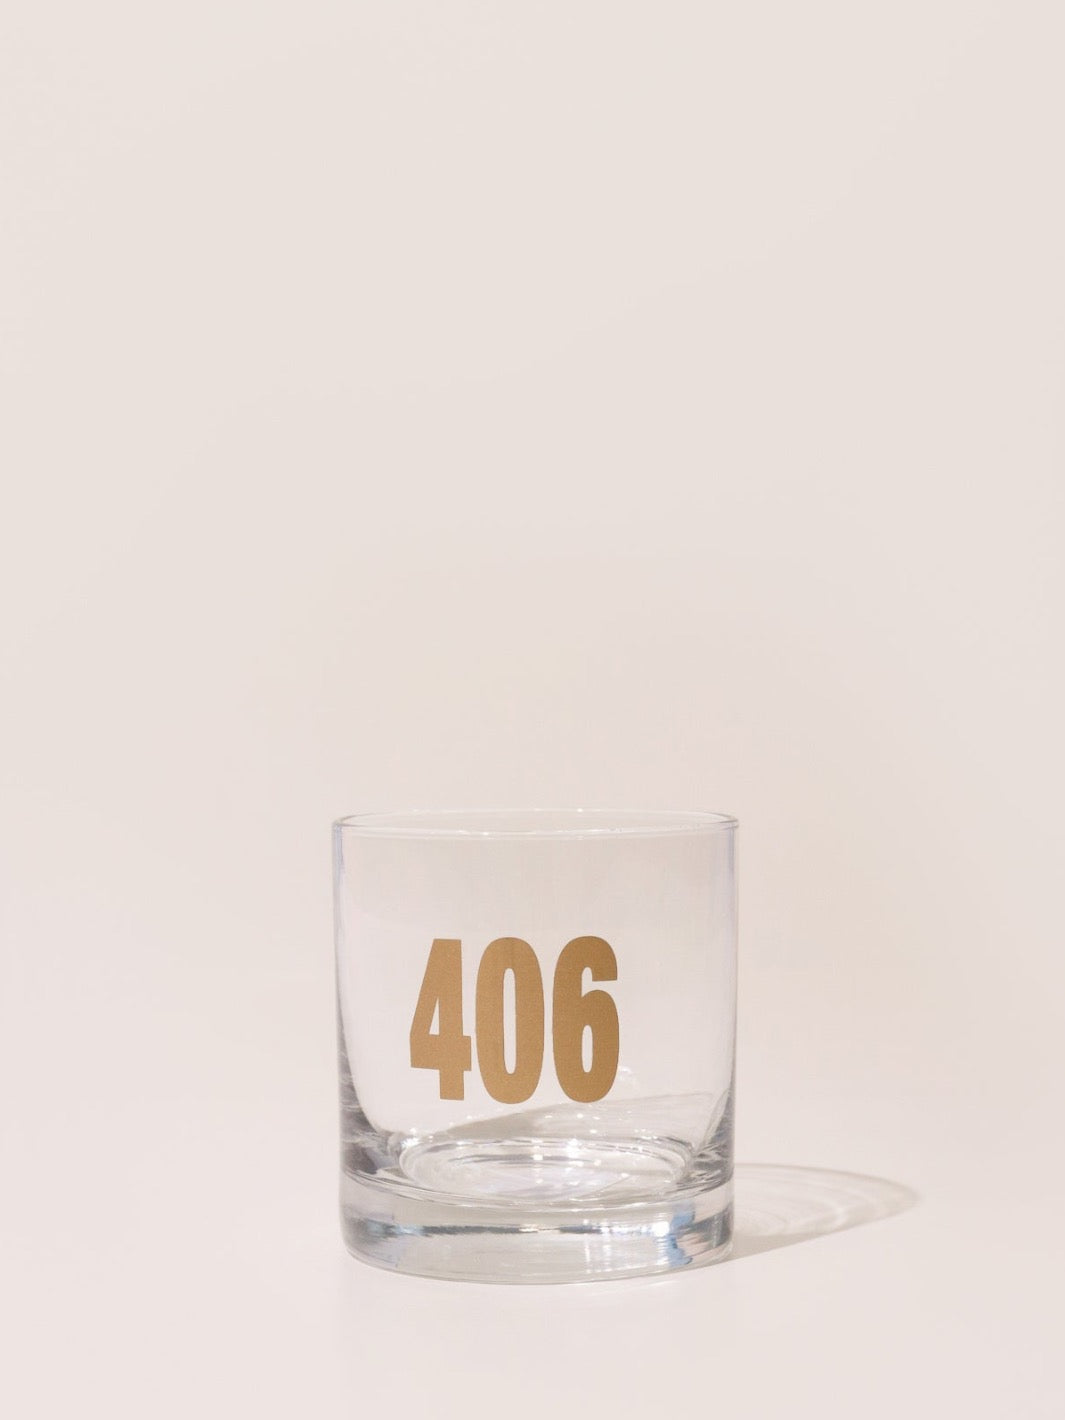 Gold 406 Rocks Glass - Heyday